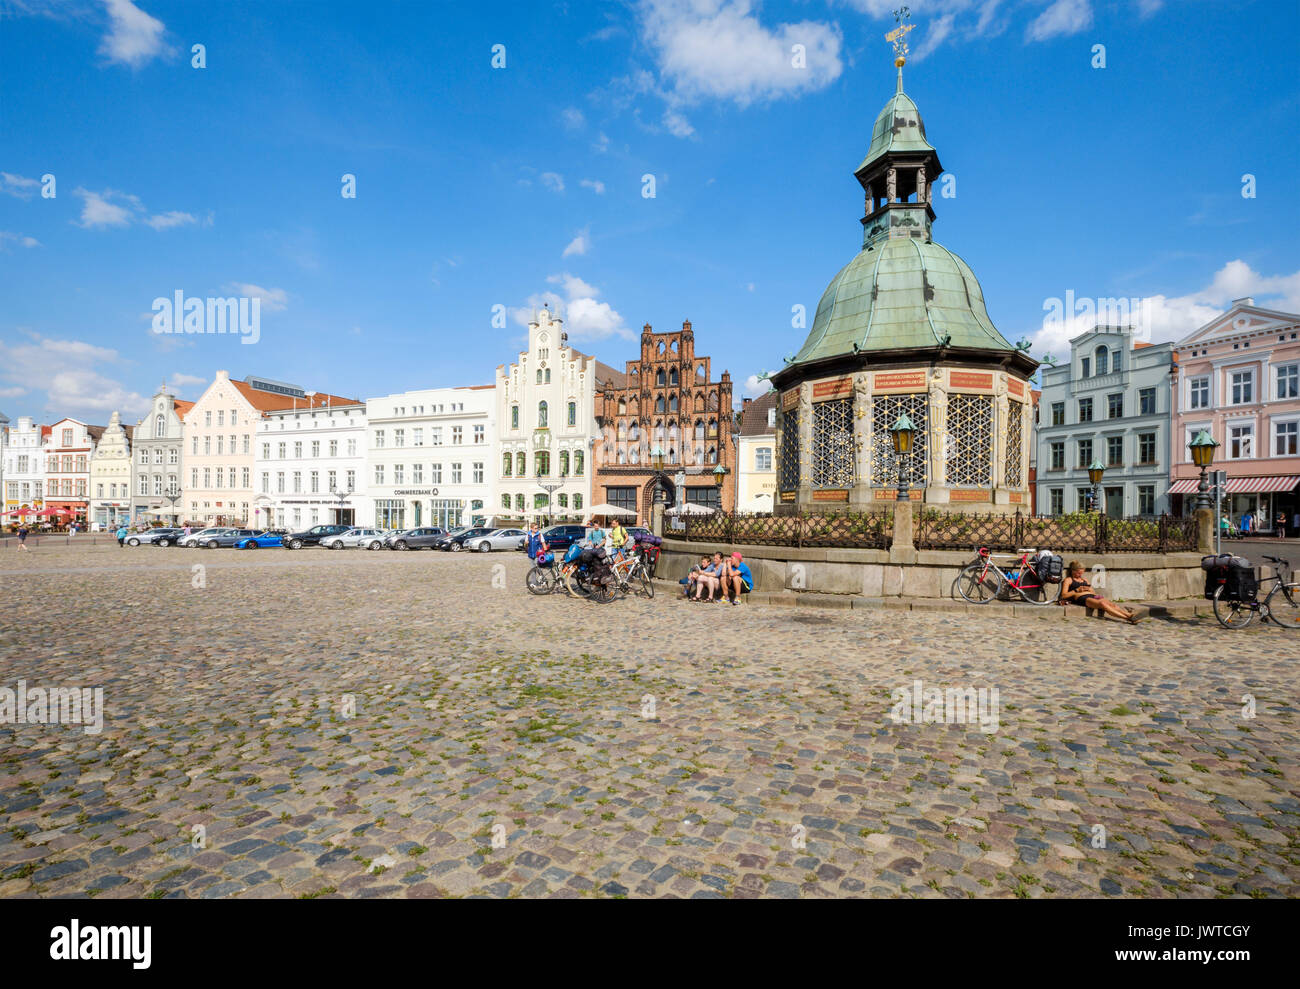 Marktplatz, am Markt mit der wasserkunst Brunnen, Wismar, Mecklenburg-Vorpommern, Deutschland Stockfoto